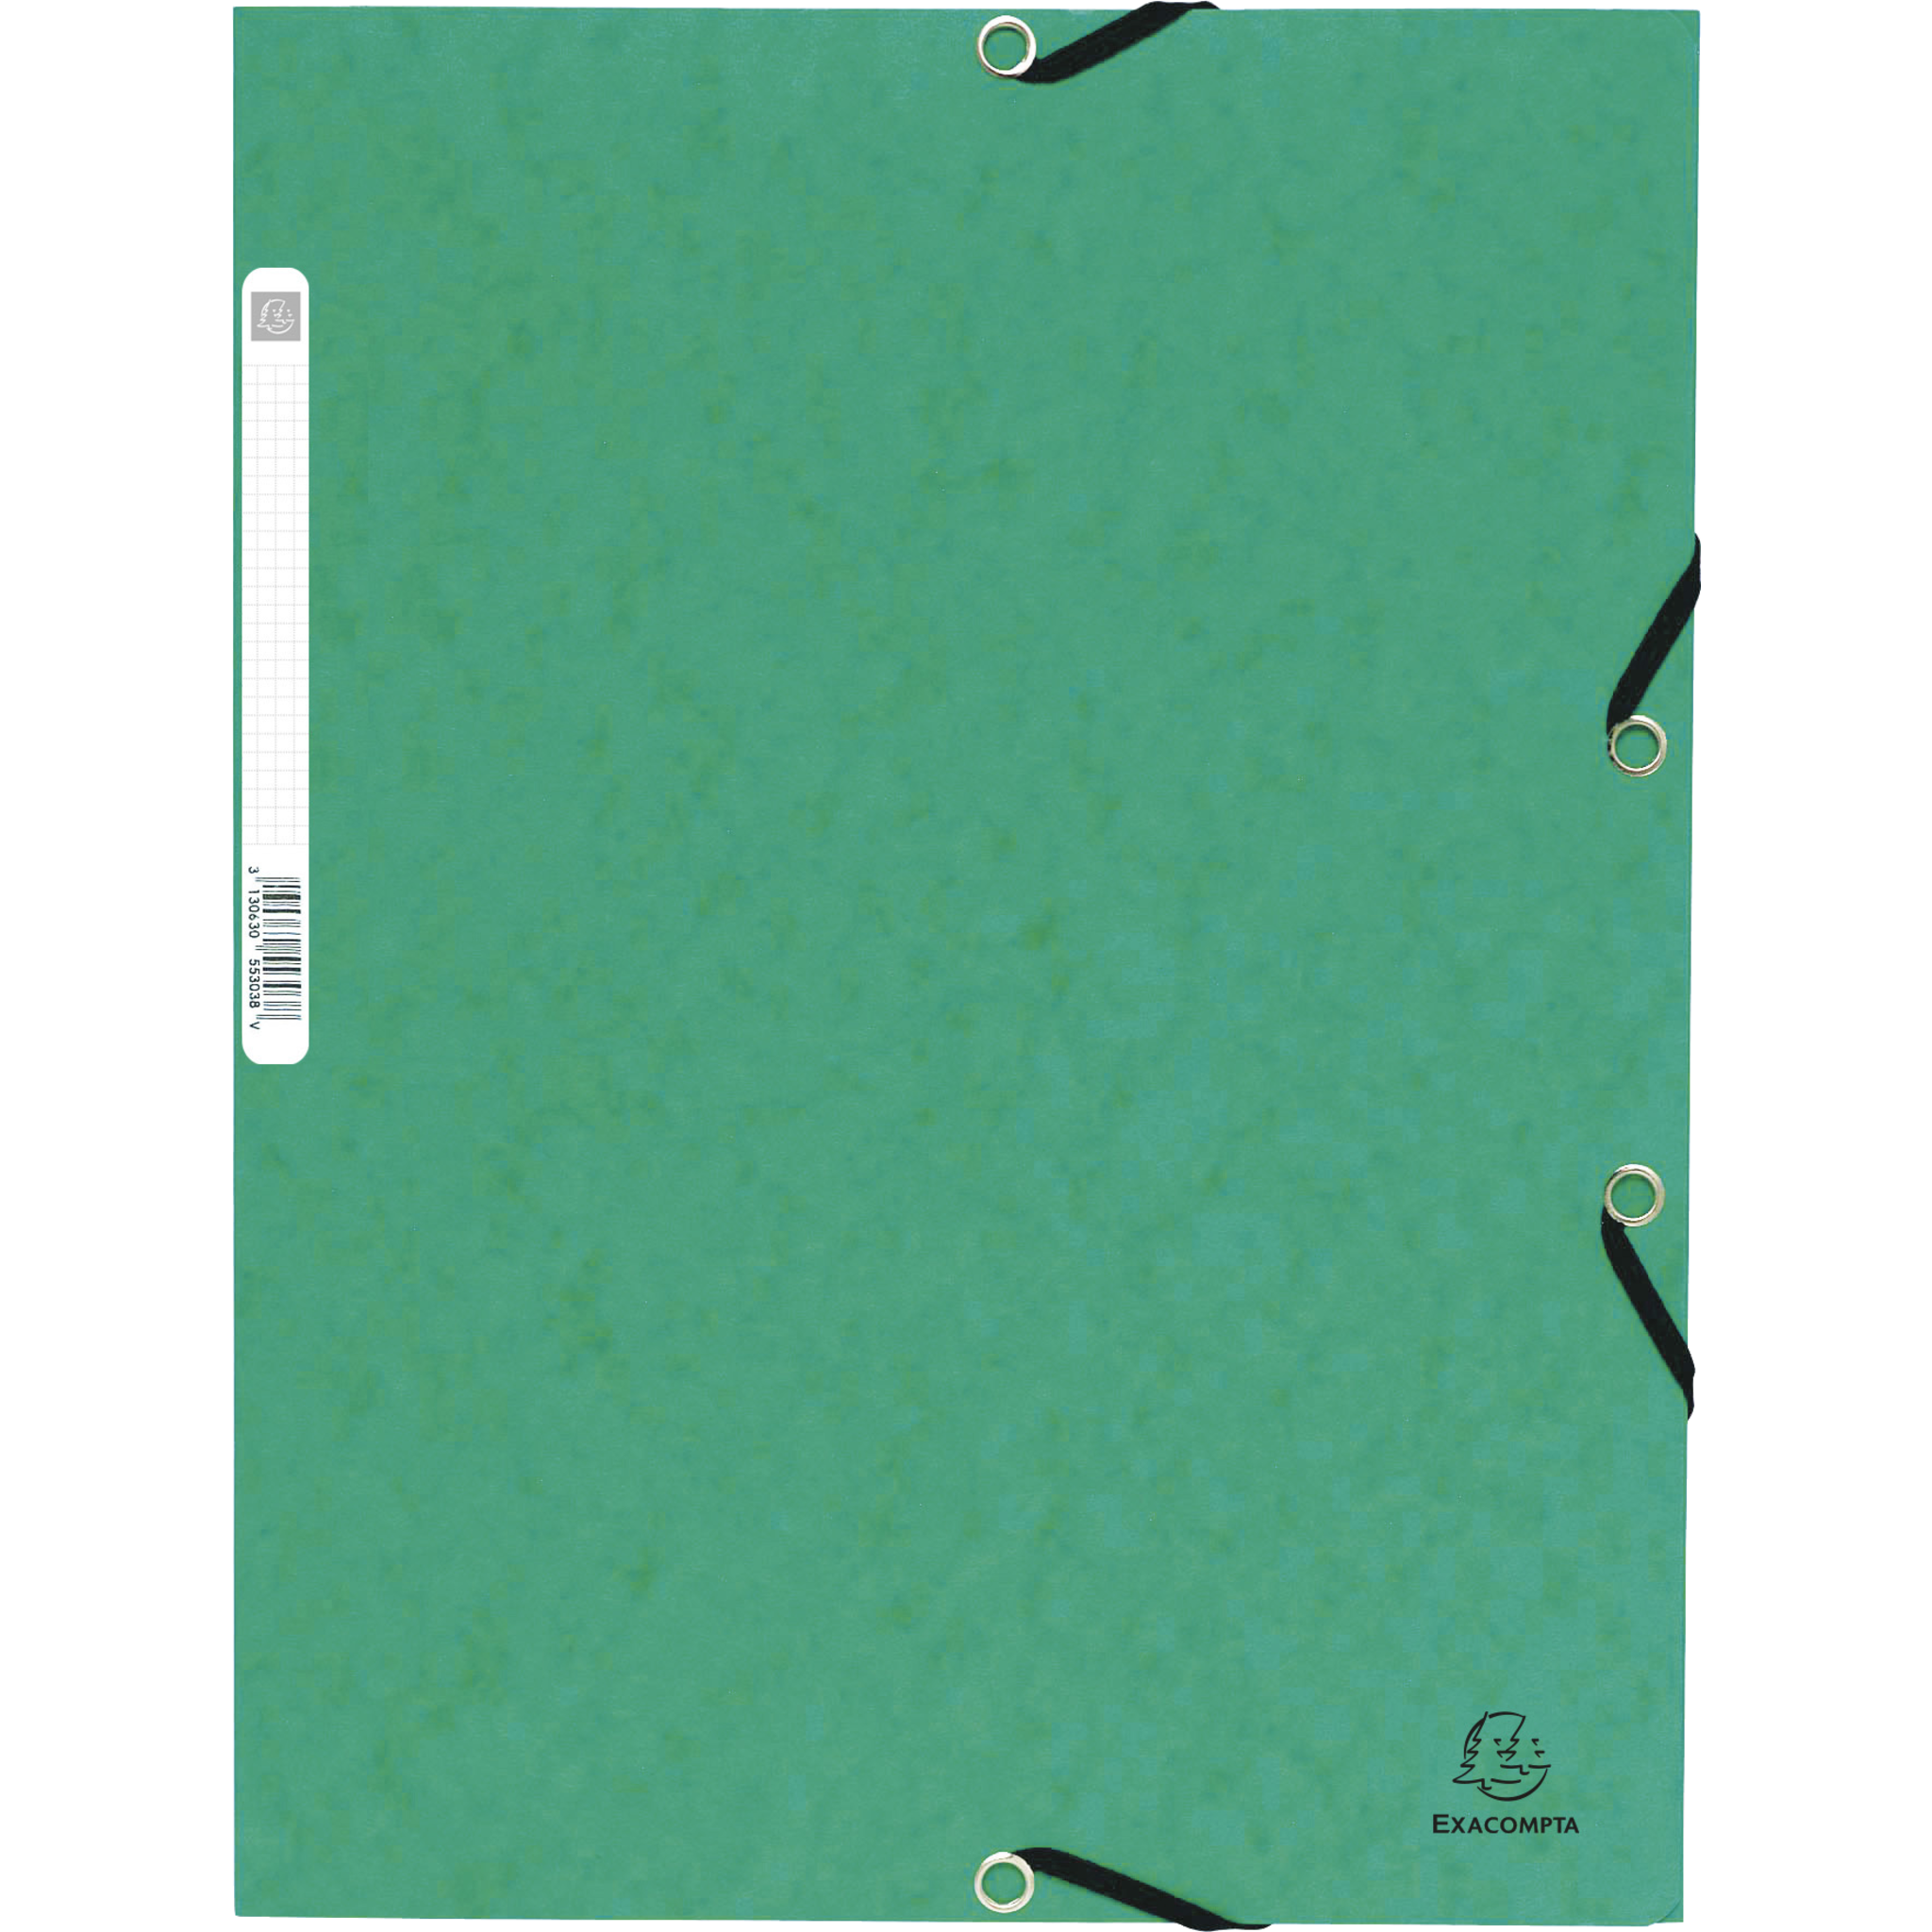 EXACOMPTA Sammelmappe mit Gummizug und 3 Klappen aus Colorspan-Karton 355g/qm, für Format DIN A4 - Grün